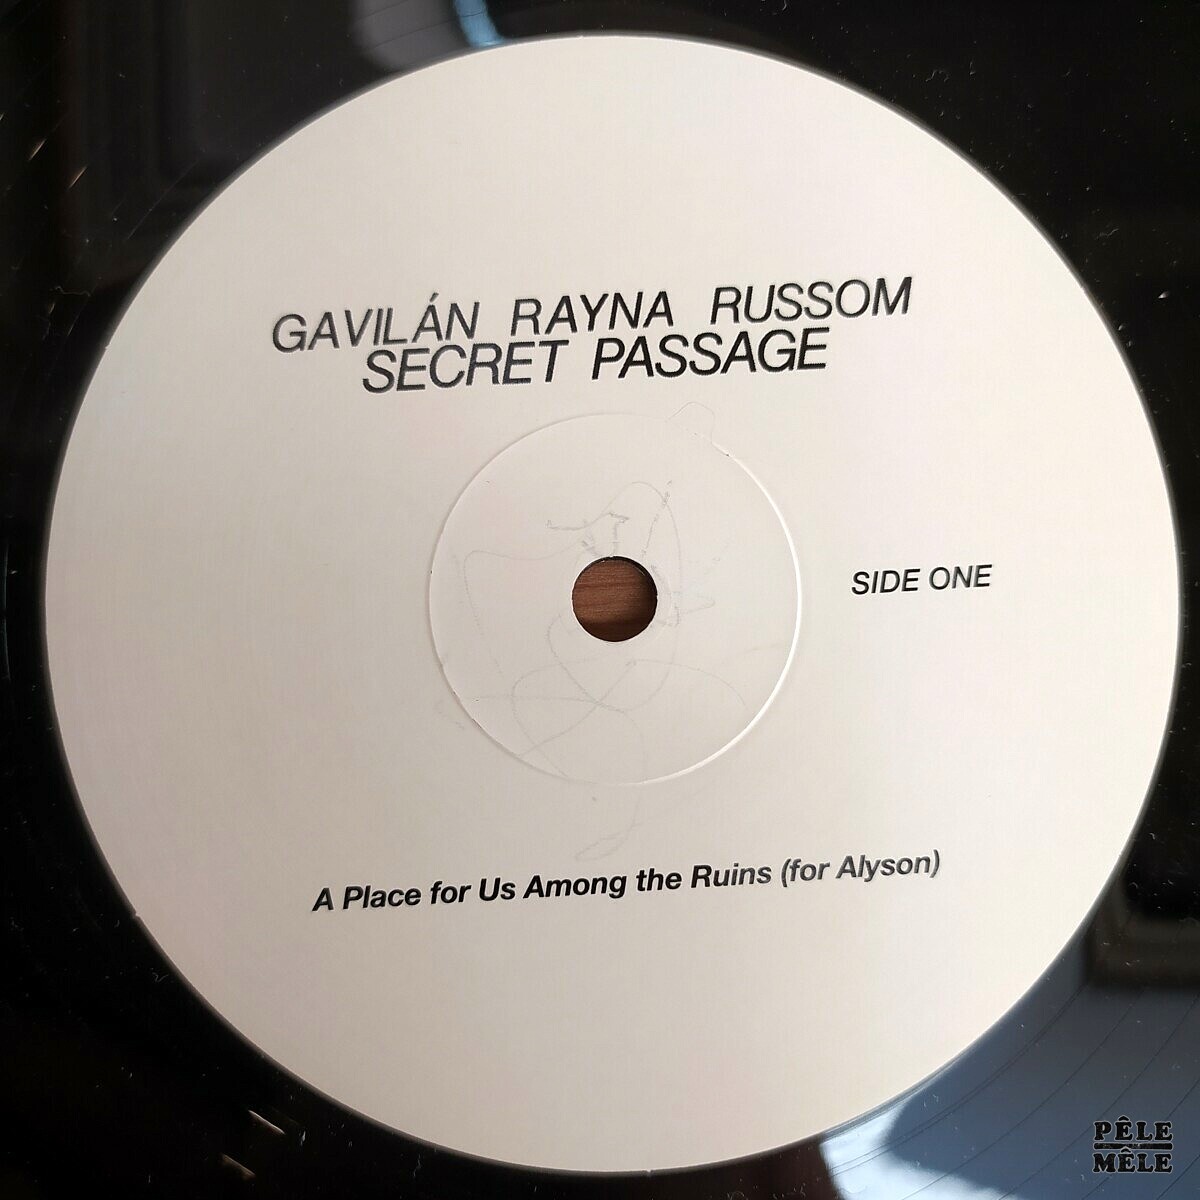 Gavilan Rayna Russom Secret Passage Voluminous Art 2020 2 Lps